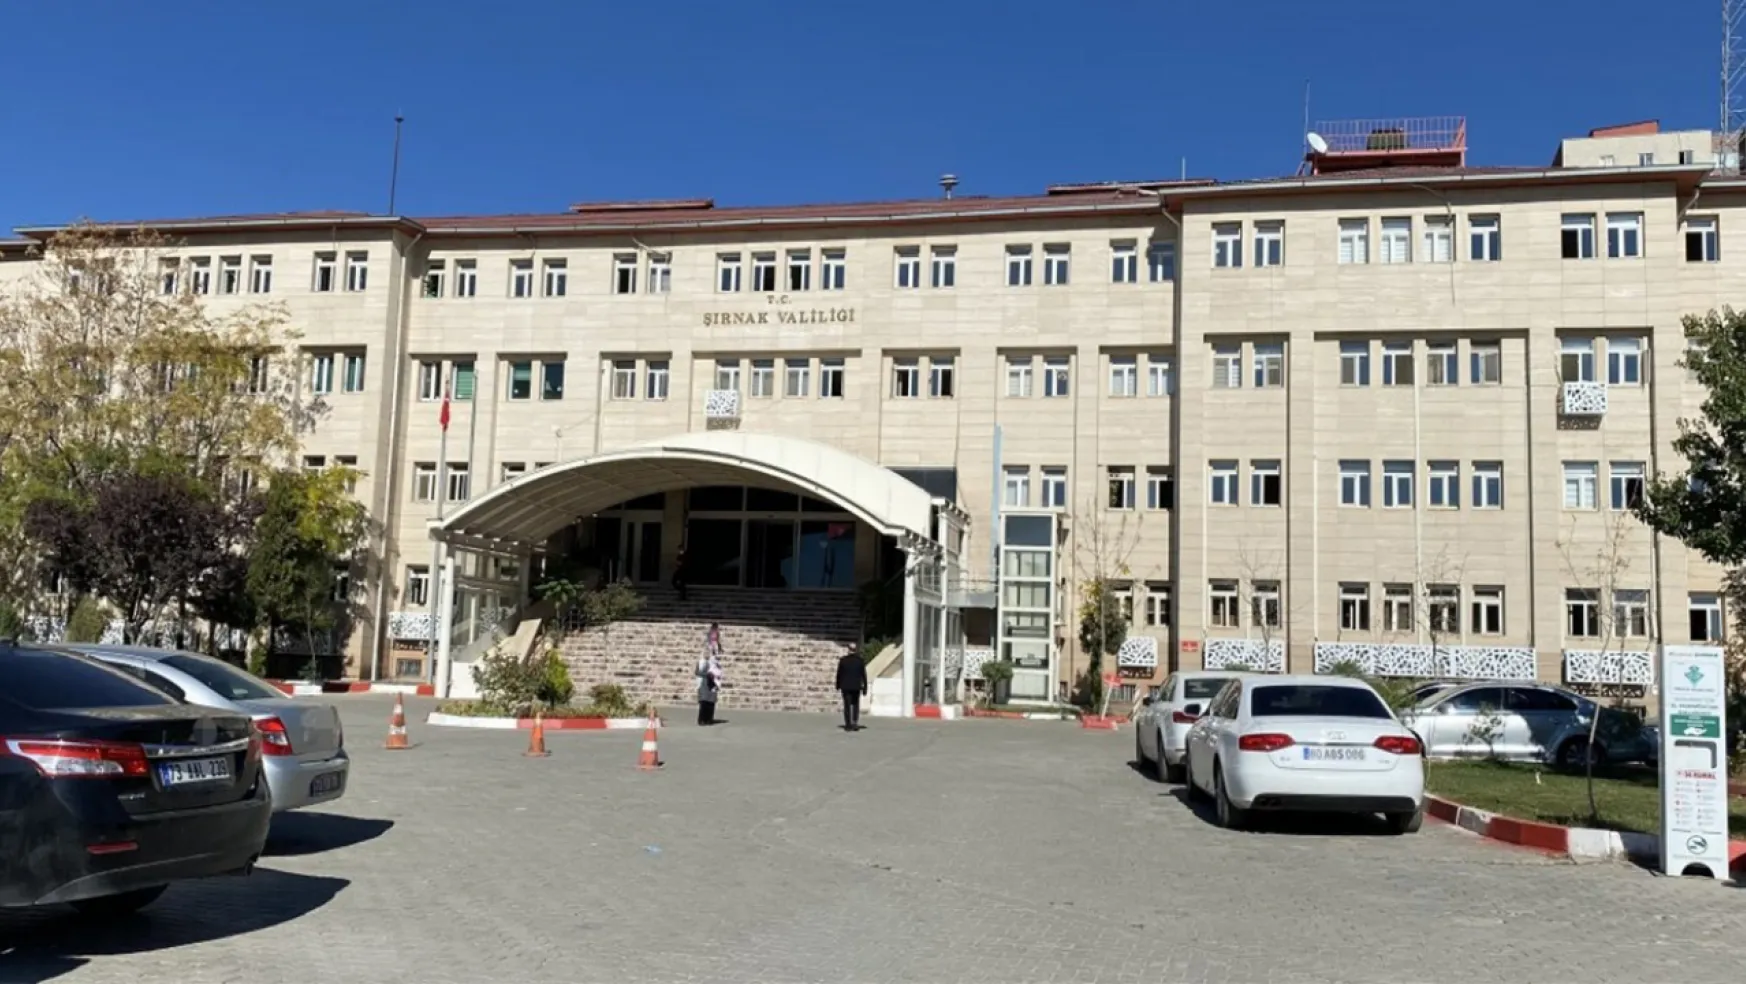 Şırnak'da 14 Bölge 'Özel Güvenlik Bölgesi' İlan Edilerek Girişler Yasaklandı